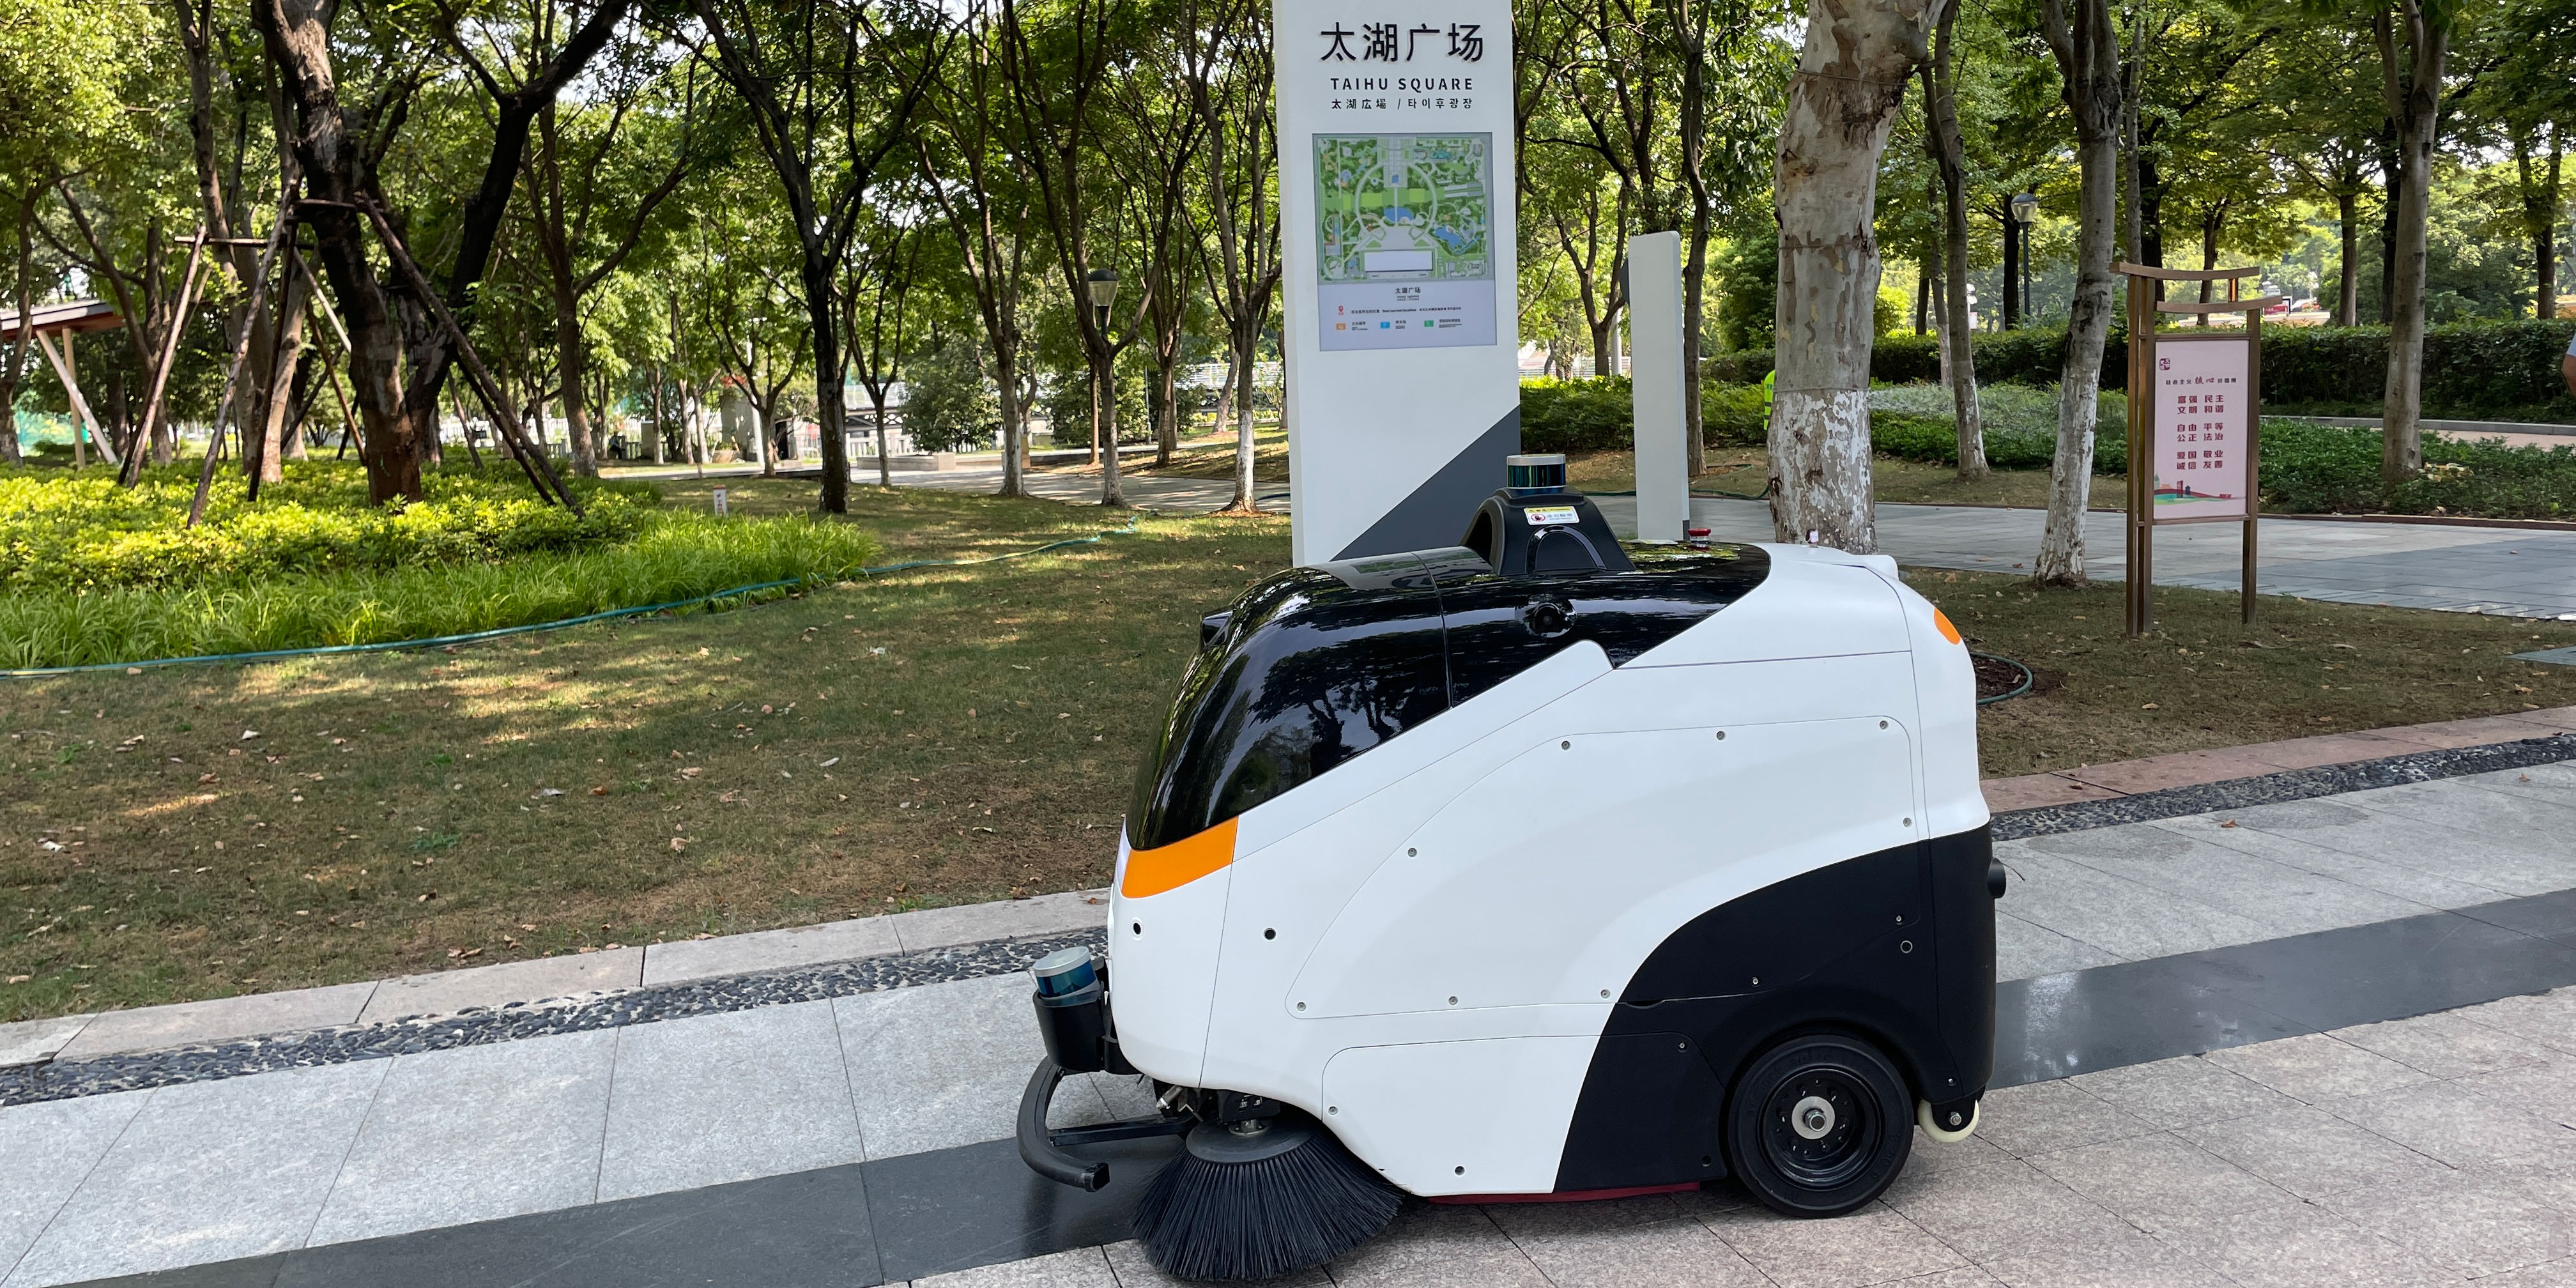 特沃斯无人洗扫机器人助力无锡太湖广场开启智能清洁模式